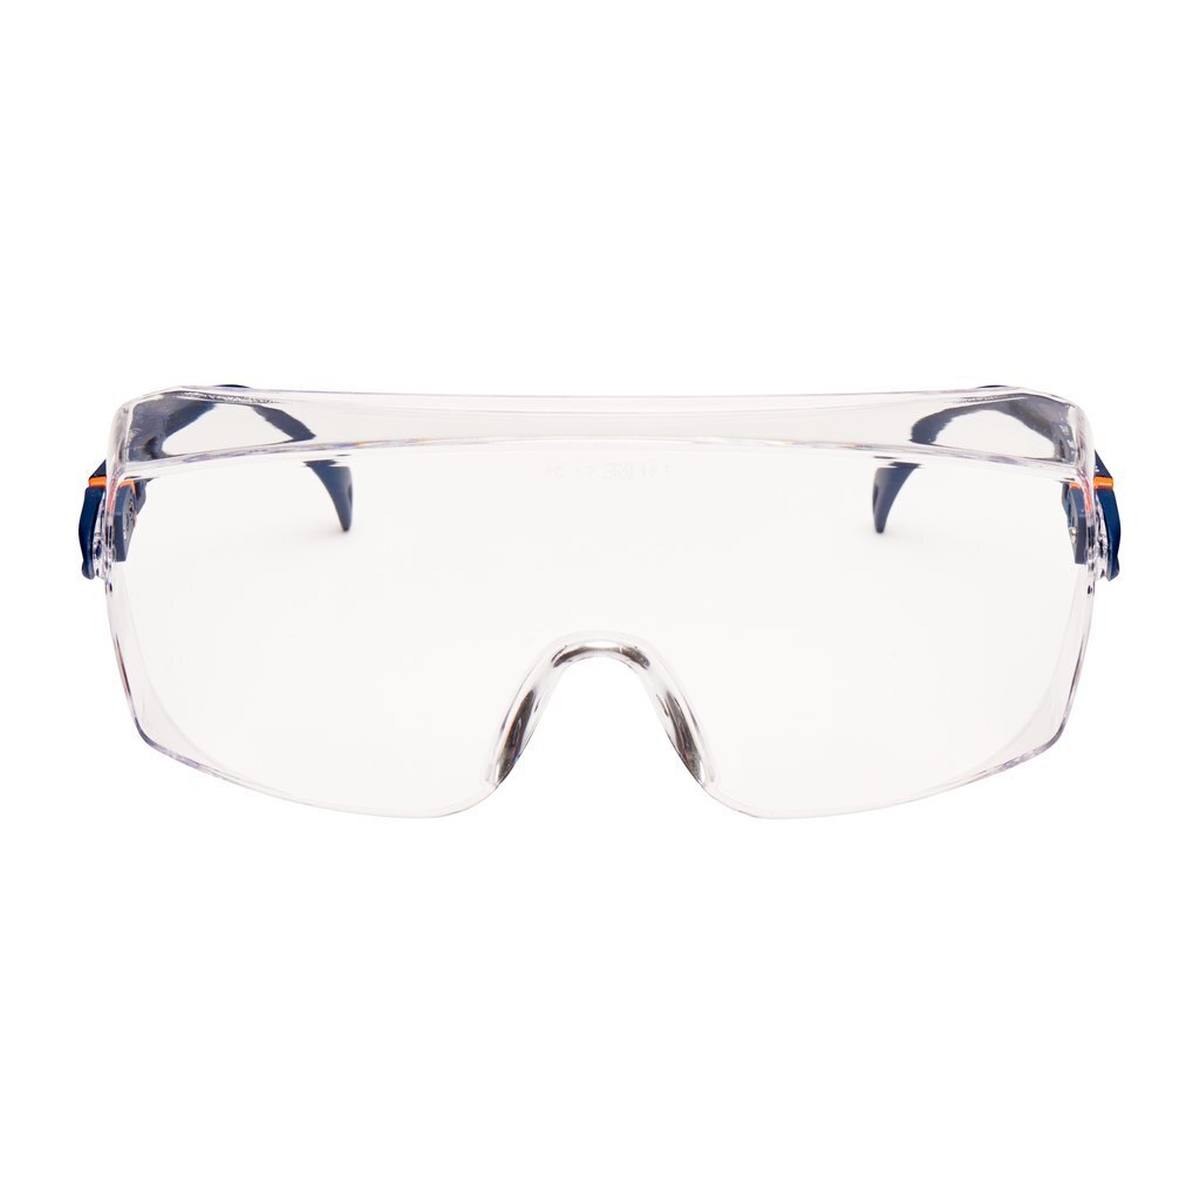 3M 2800 Lunettes de protection AS/UV, PC, transparentes, réglables, idéales comme surlunettes pour les porteurs de lunettes